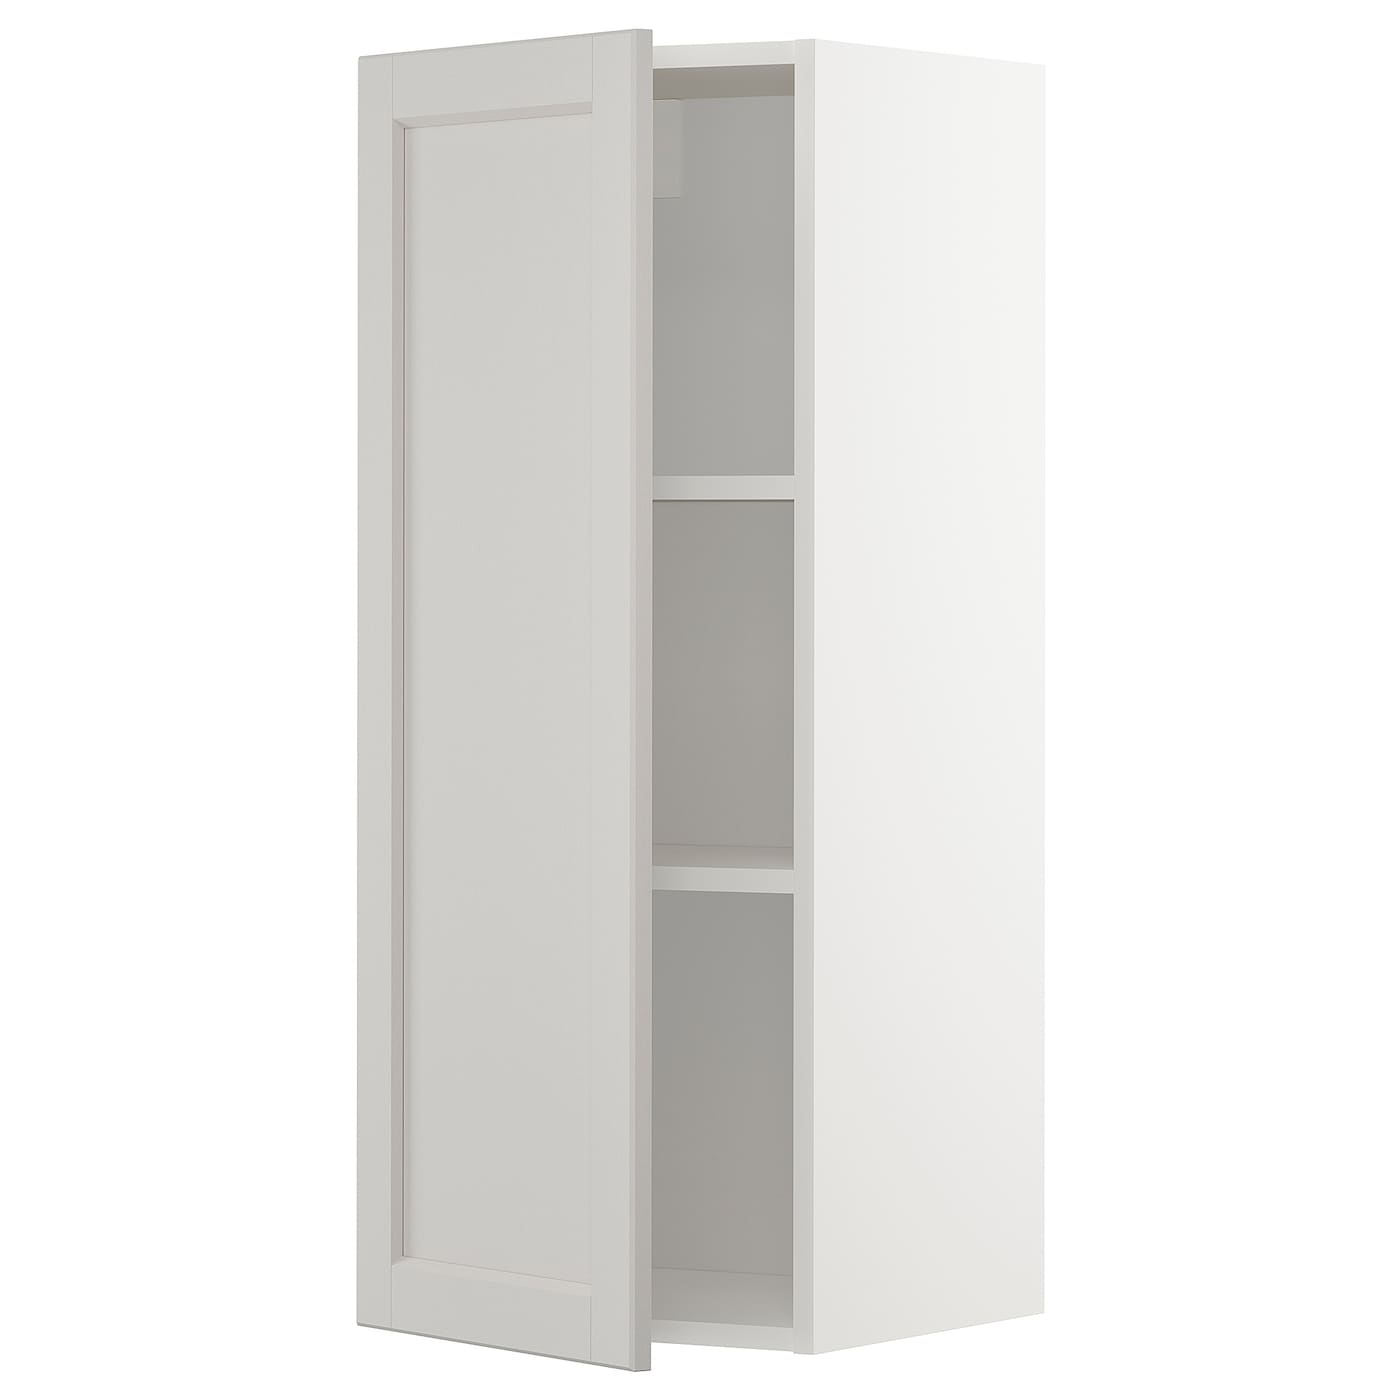 Навесной шкаф с полкой - METOD IKEA/ МЕТОД ИКЕА, 100х40 см, белый/светло-серый